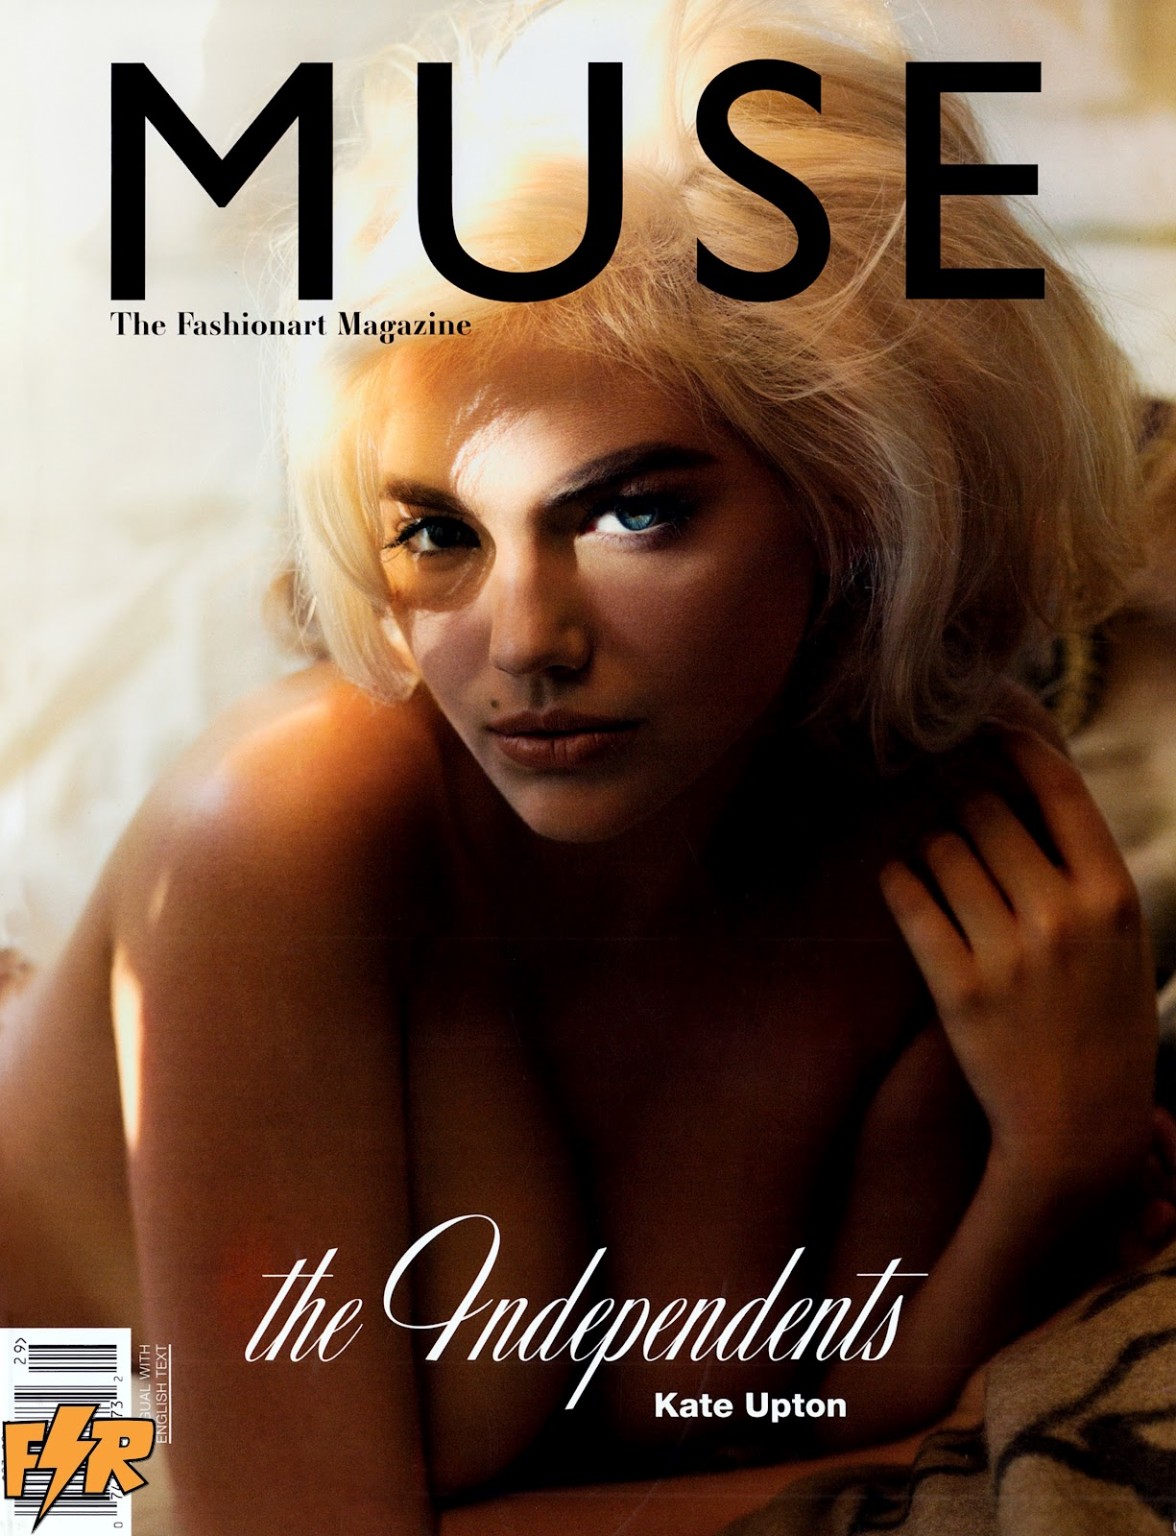 Kate upton völlig nackt, aber versteckt in der Frühjahr 2012 Ausgabe des Muse Magazins
 #75265047